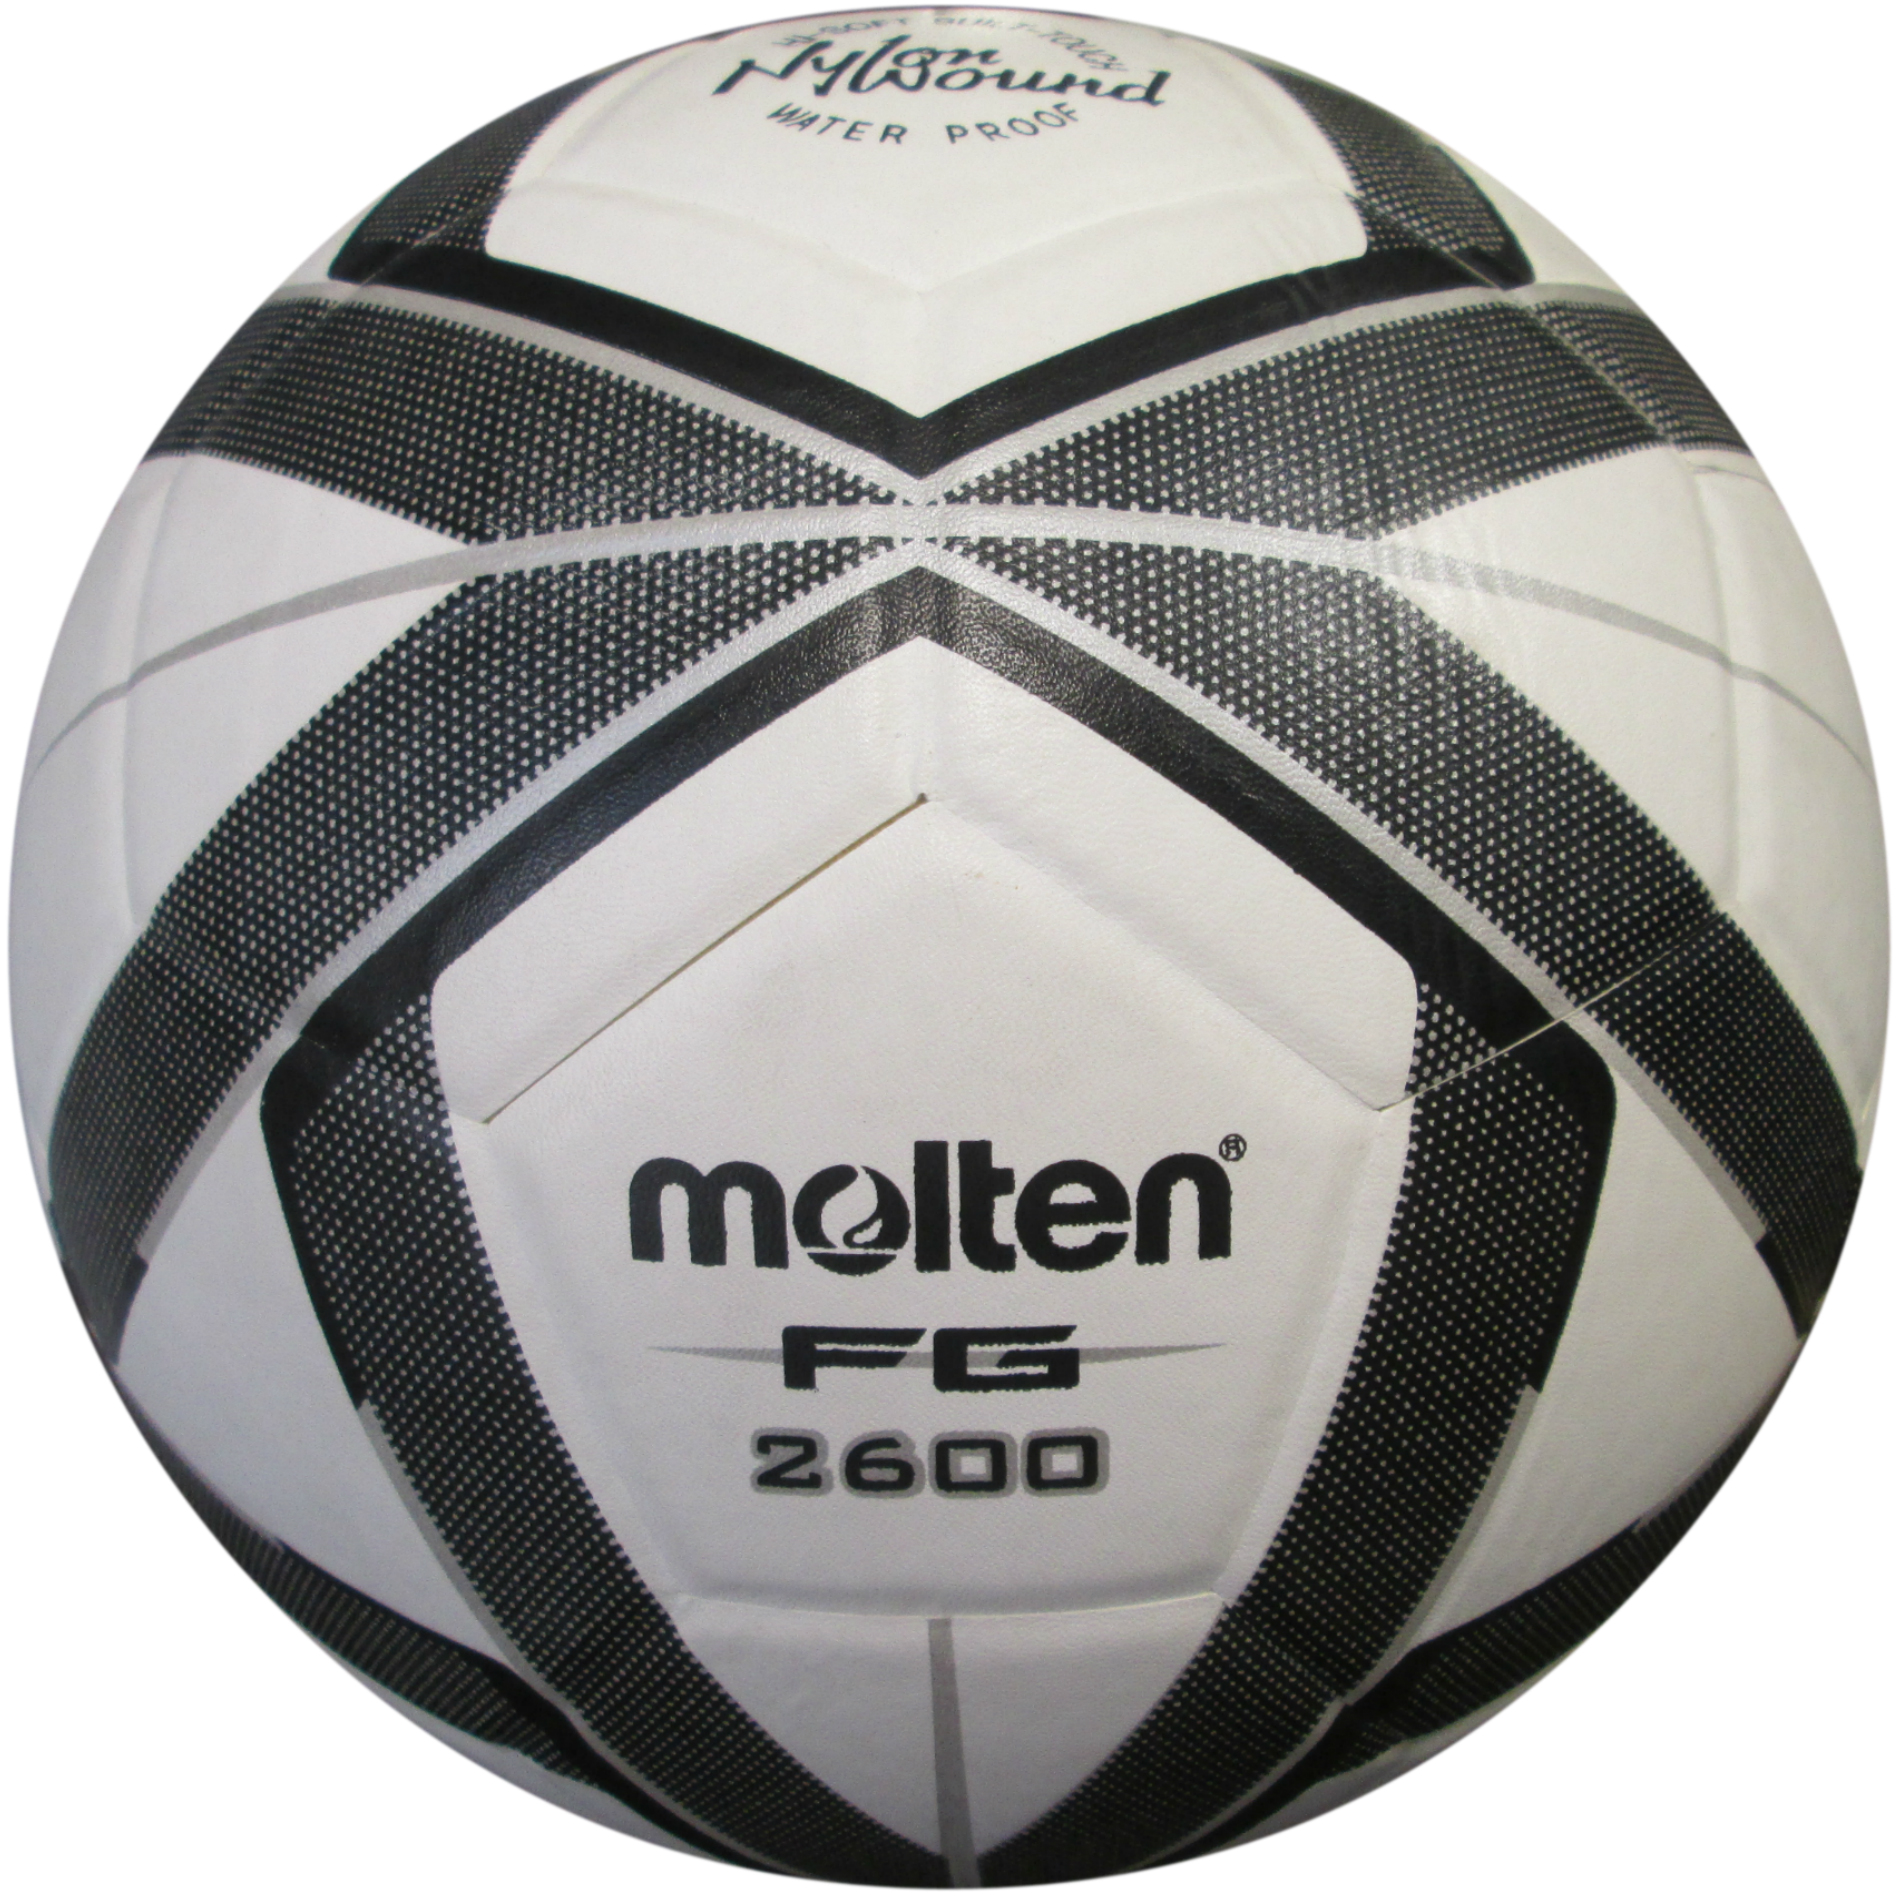 Balón Deportivo de la Coruña 22/23 cosido a máquina 24 paneles tamaño5